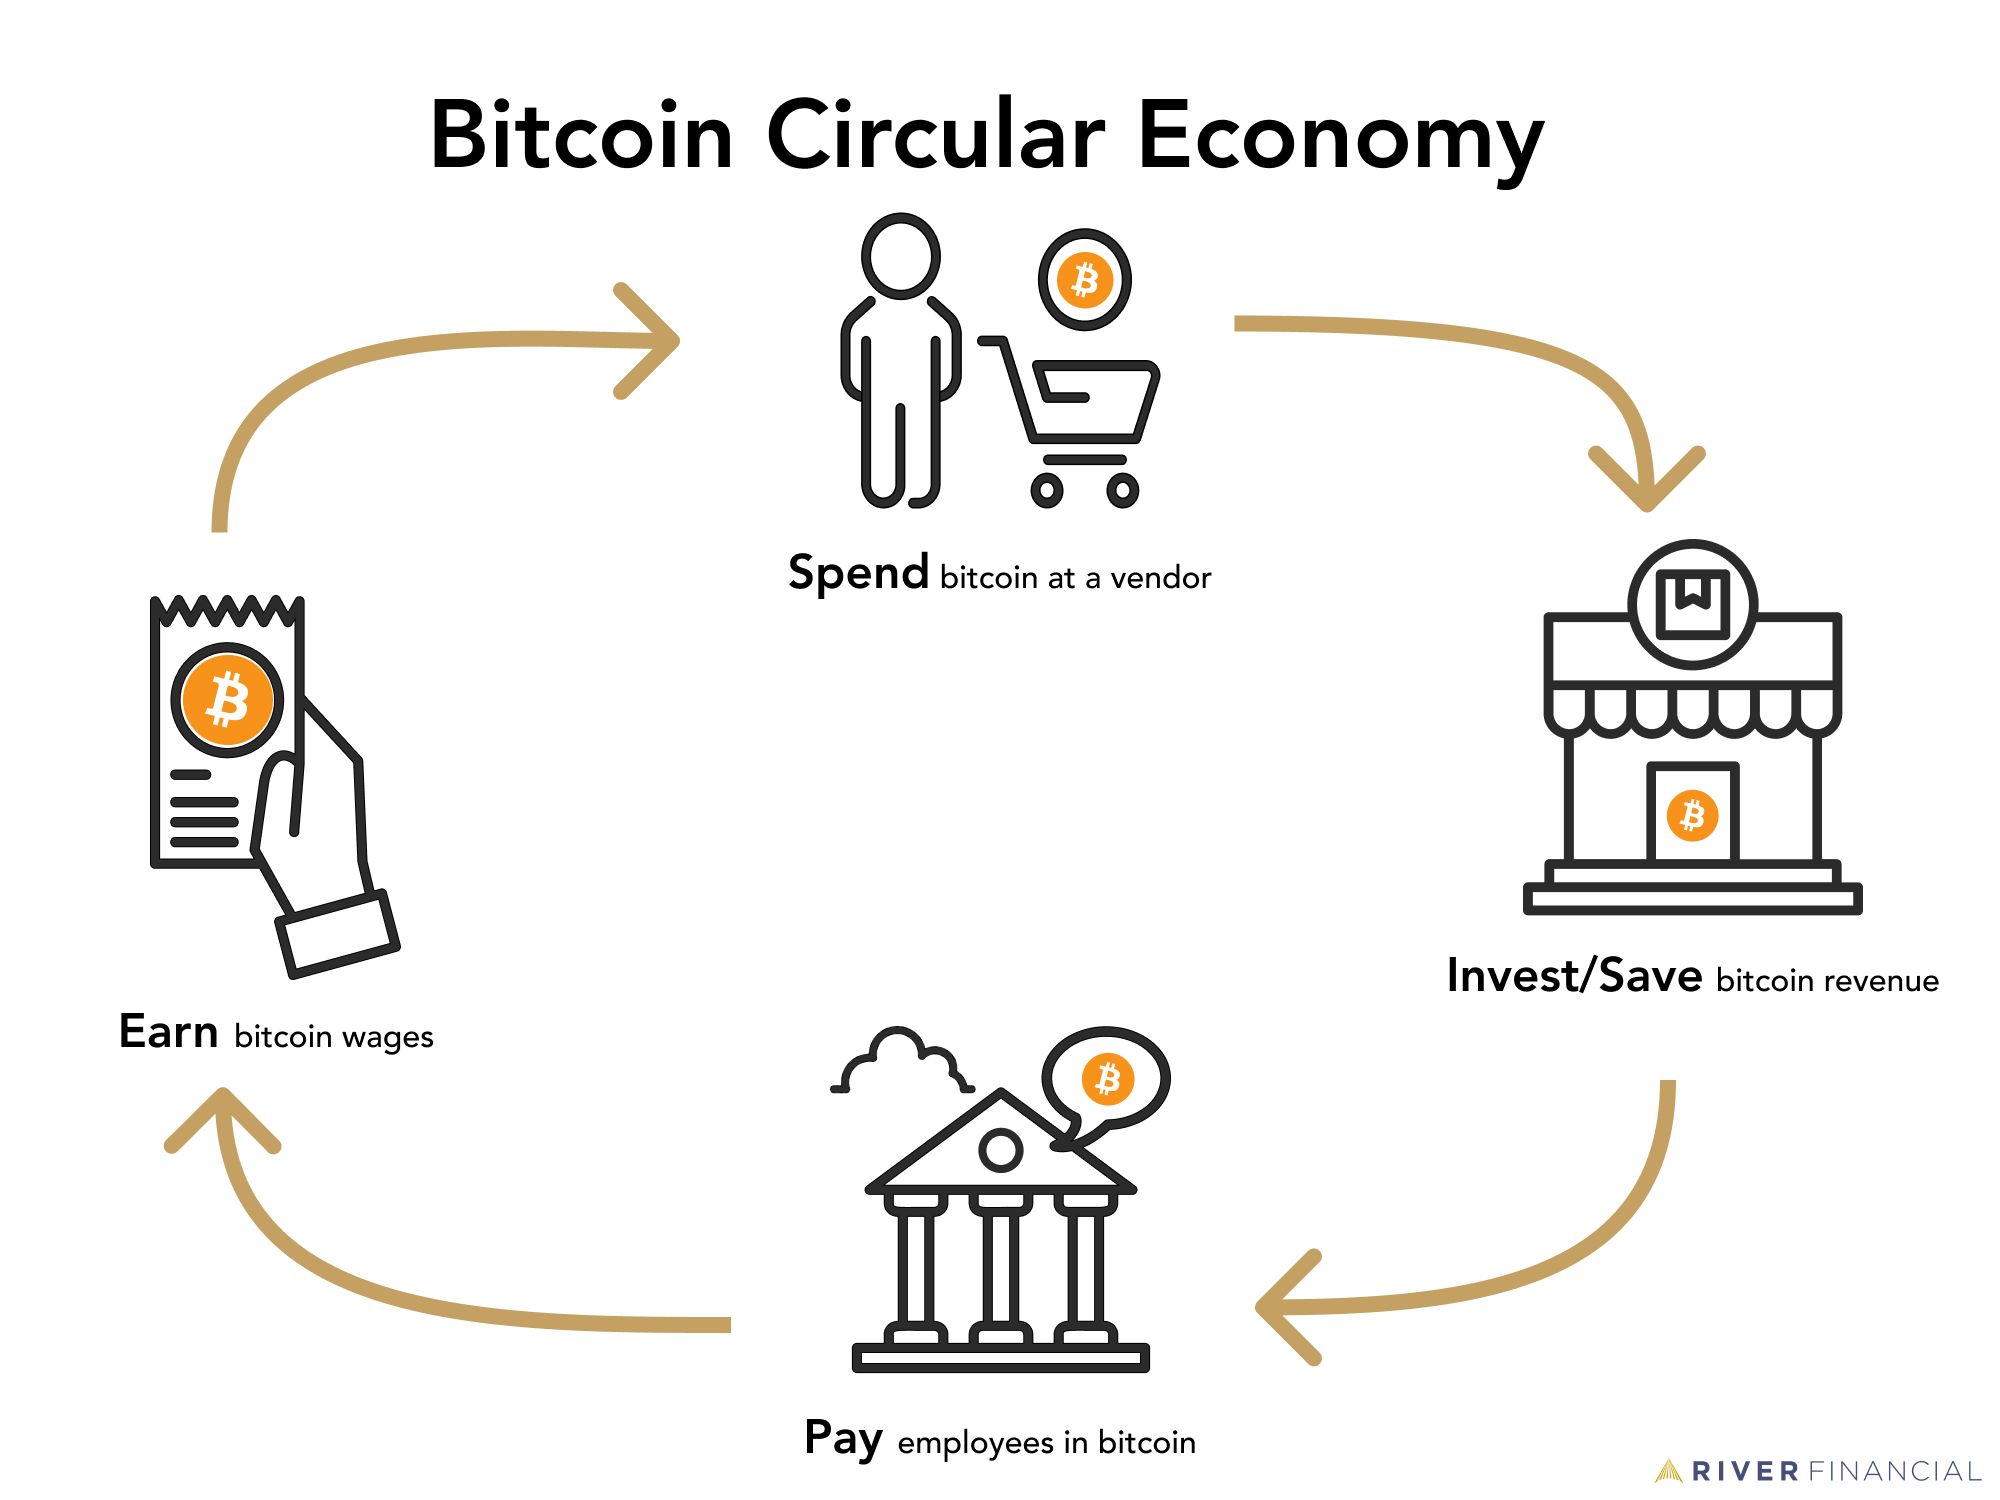 Bitcoin Circular Economy graphic